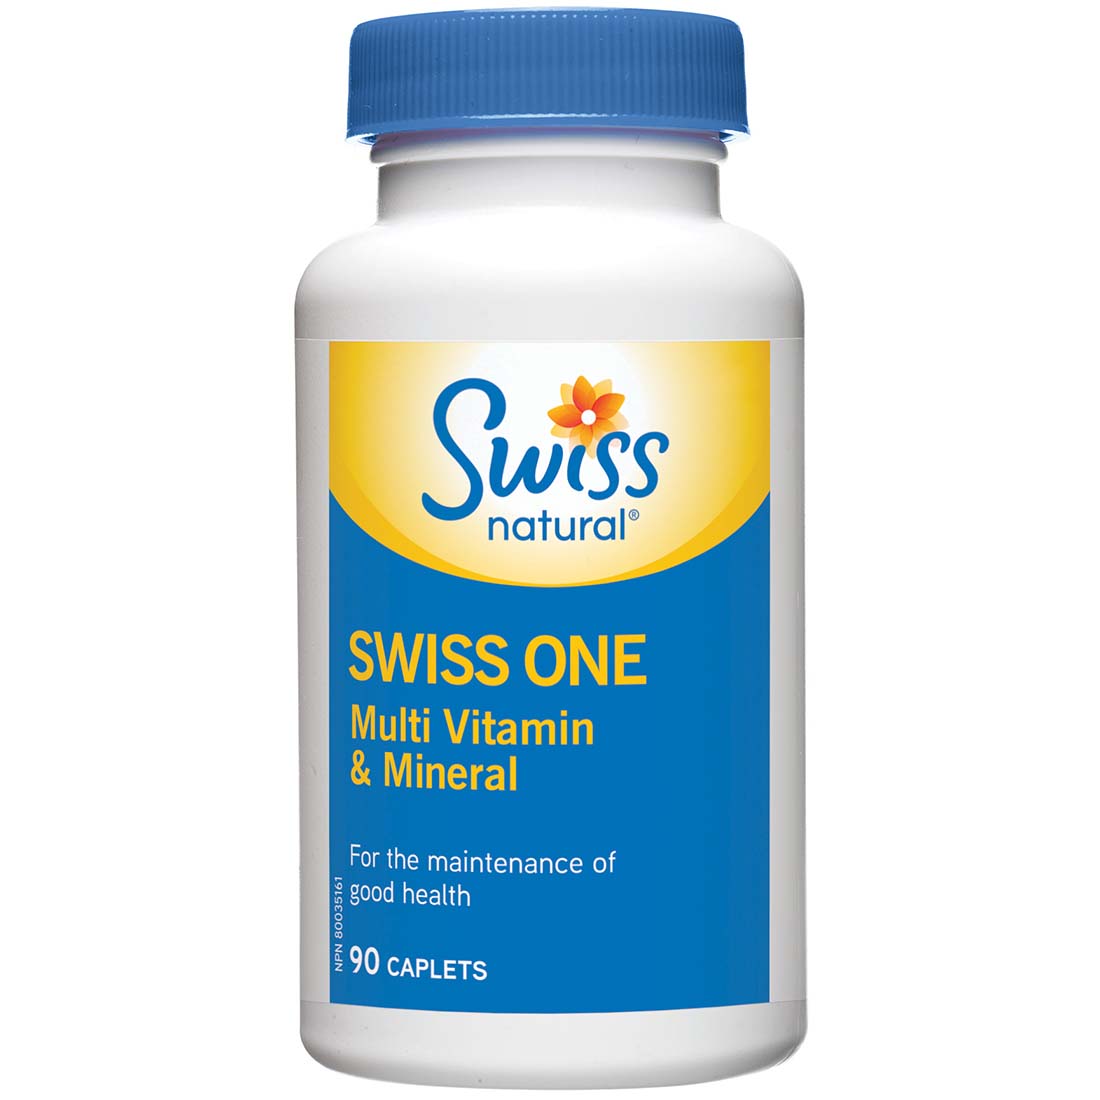 Swiss Natural Swiss One Multi Vitamin & Mineral, 90 Caplets